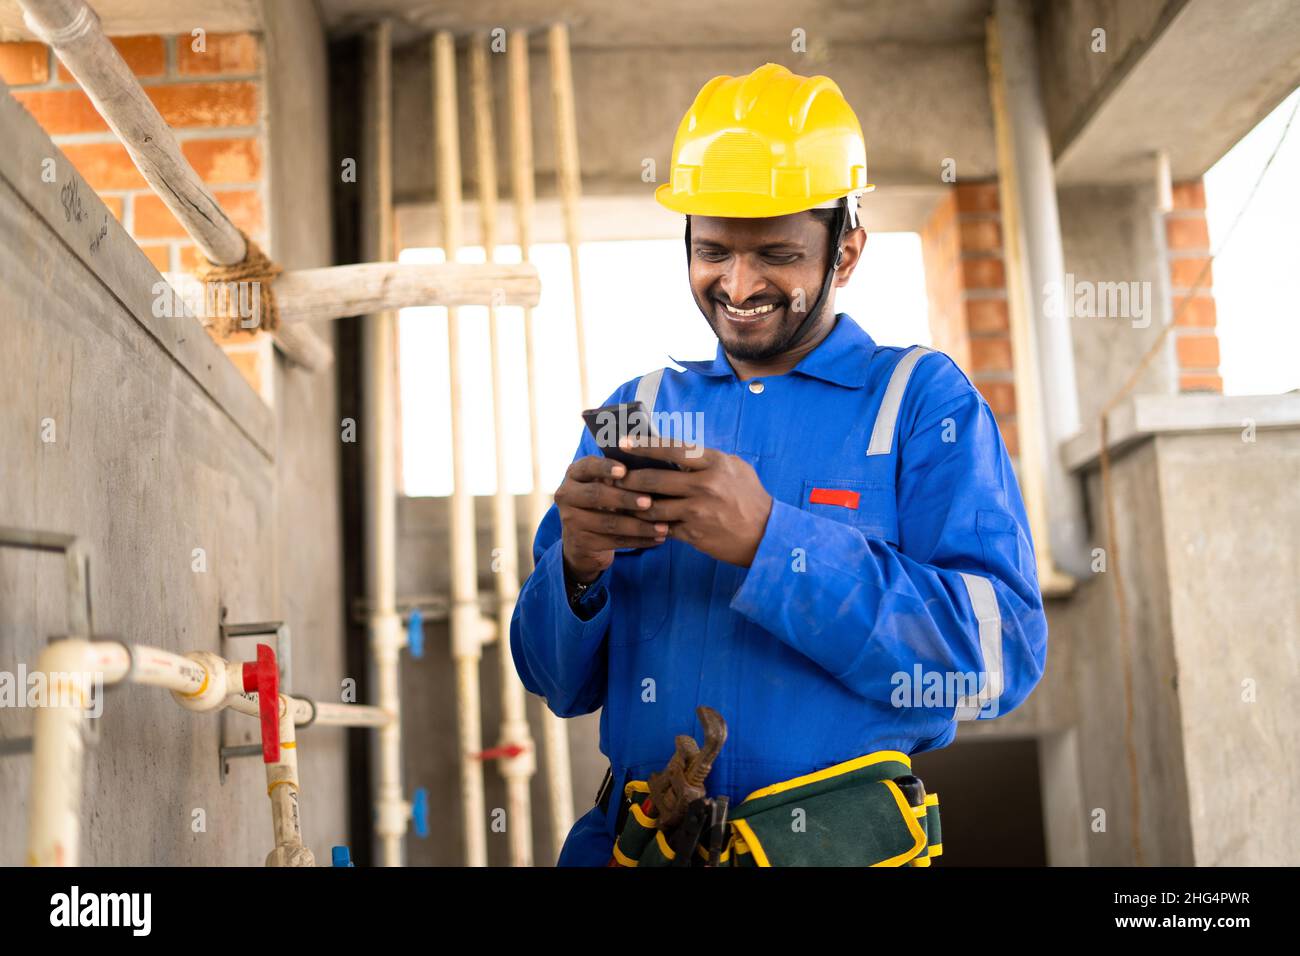 Ein junger indischer Klempner oder Reparaturmann, der mit dem Handy beschäftigt ist, während er an der Industrie arbeitet - Konzept der Zeitverschwendung durch den Einsatz sozialer Medien Stockfoto